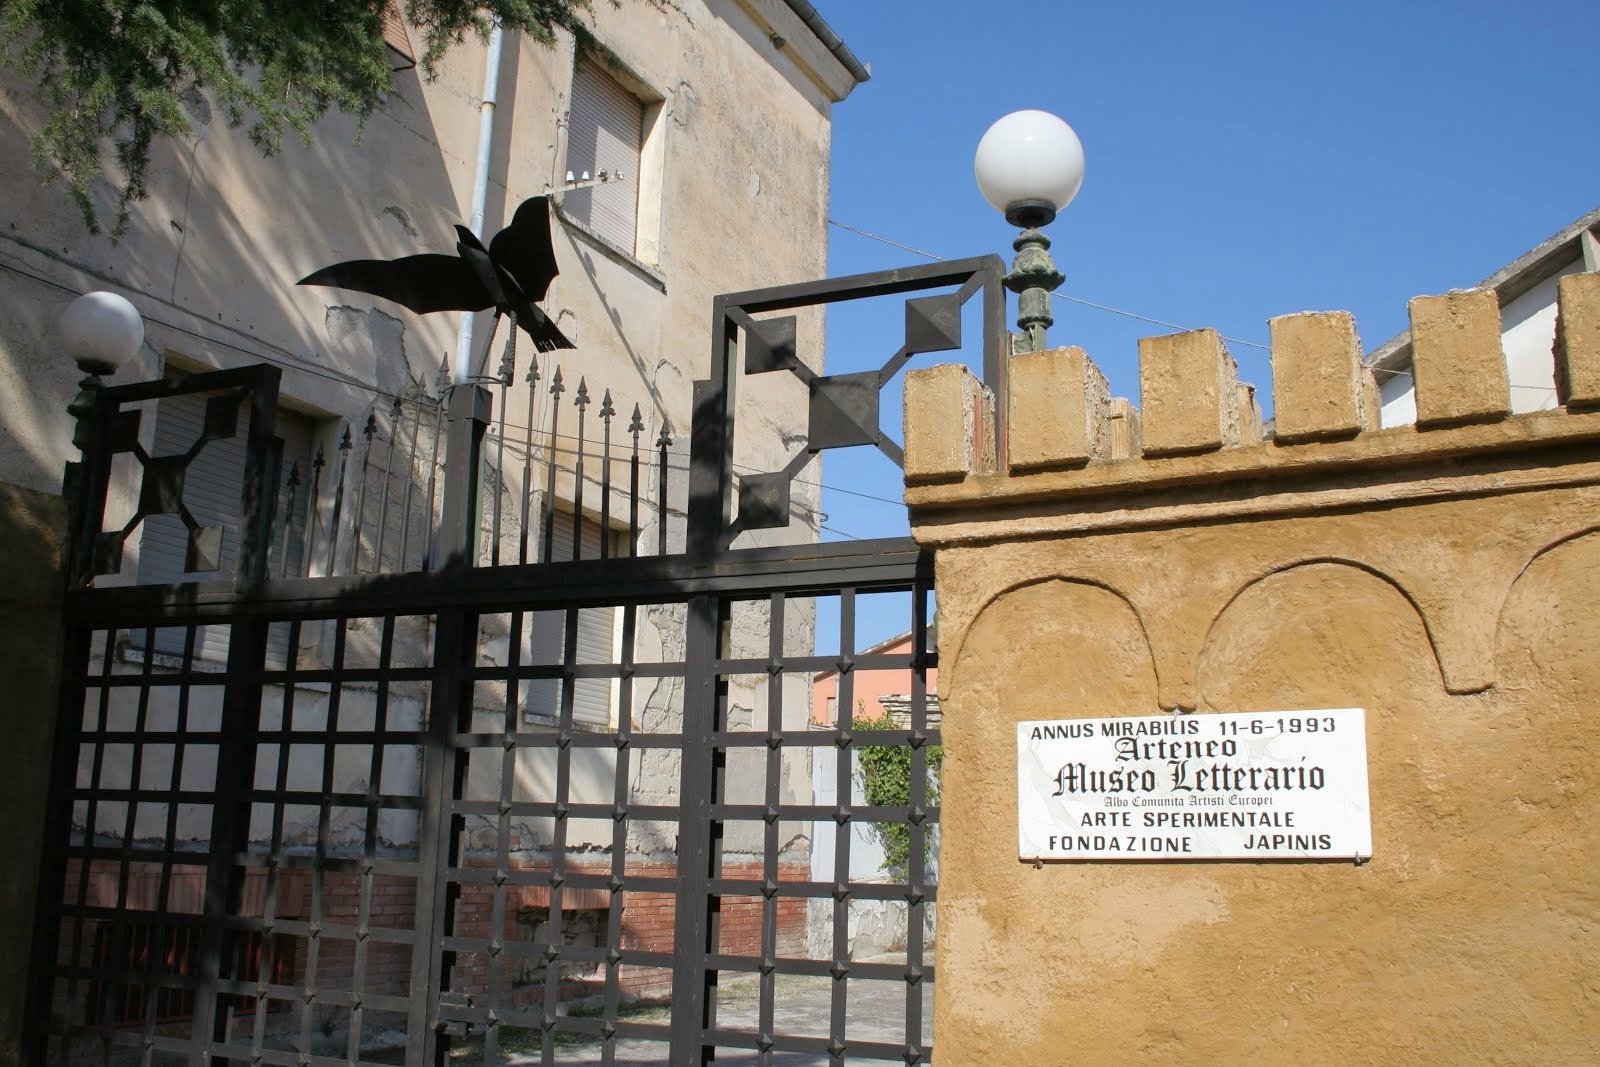 Ingresso Museo Arteneo